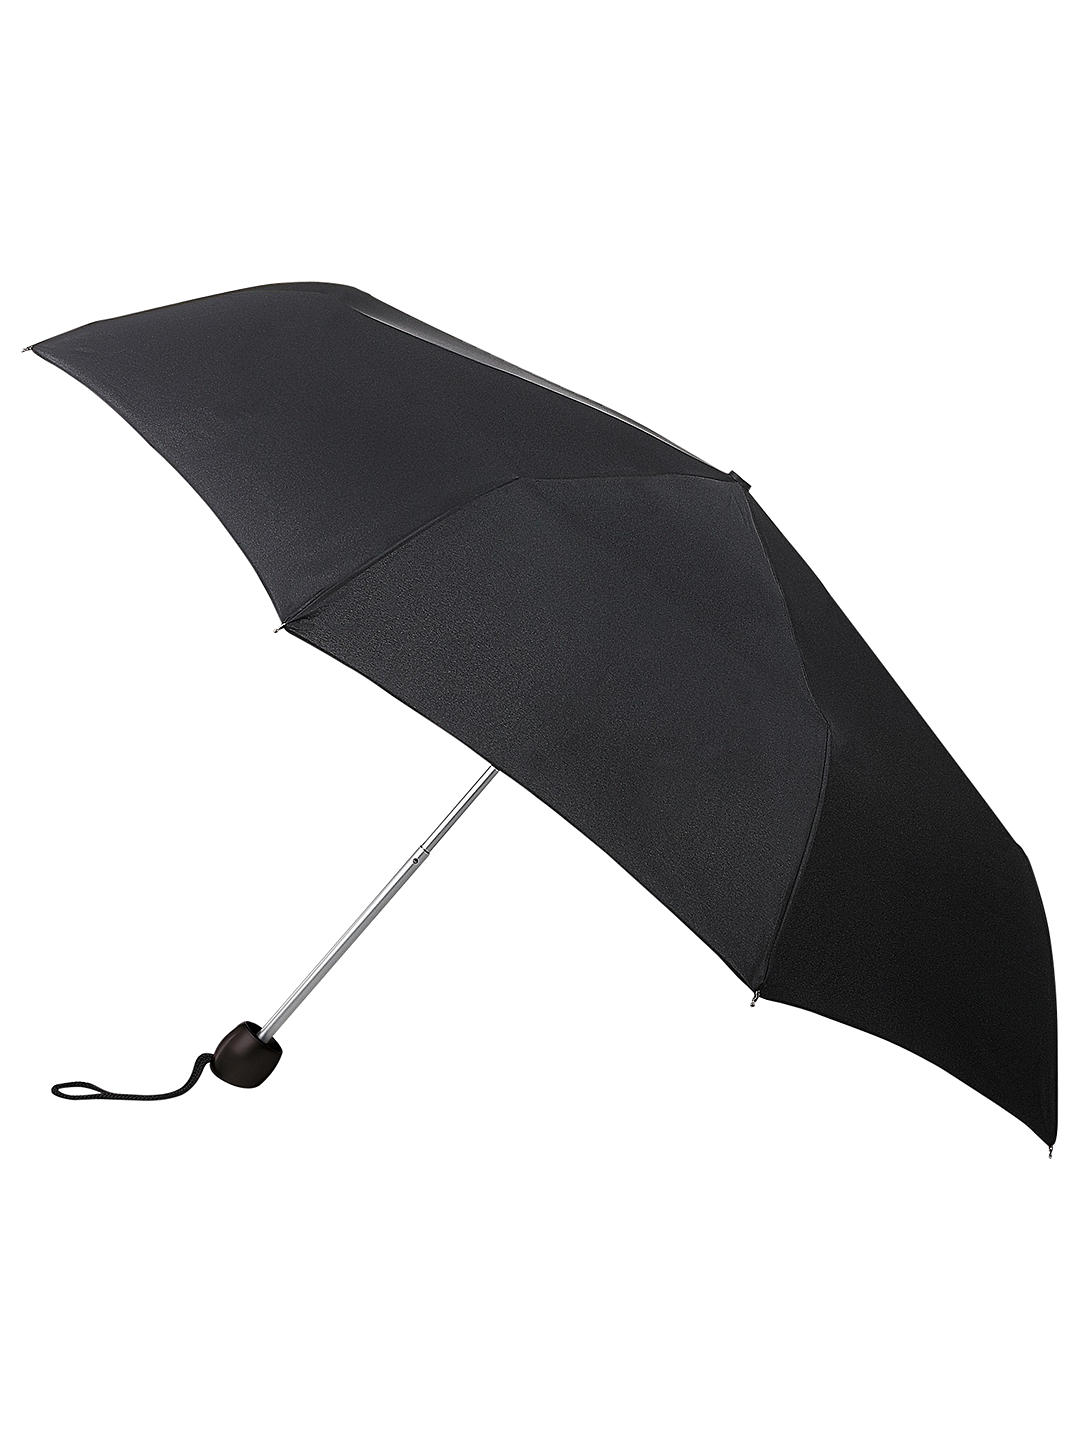 Fulton L353 Minilite Umbrella, Black